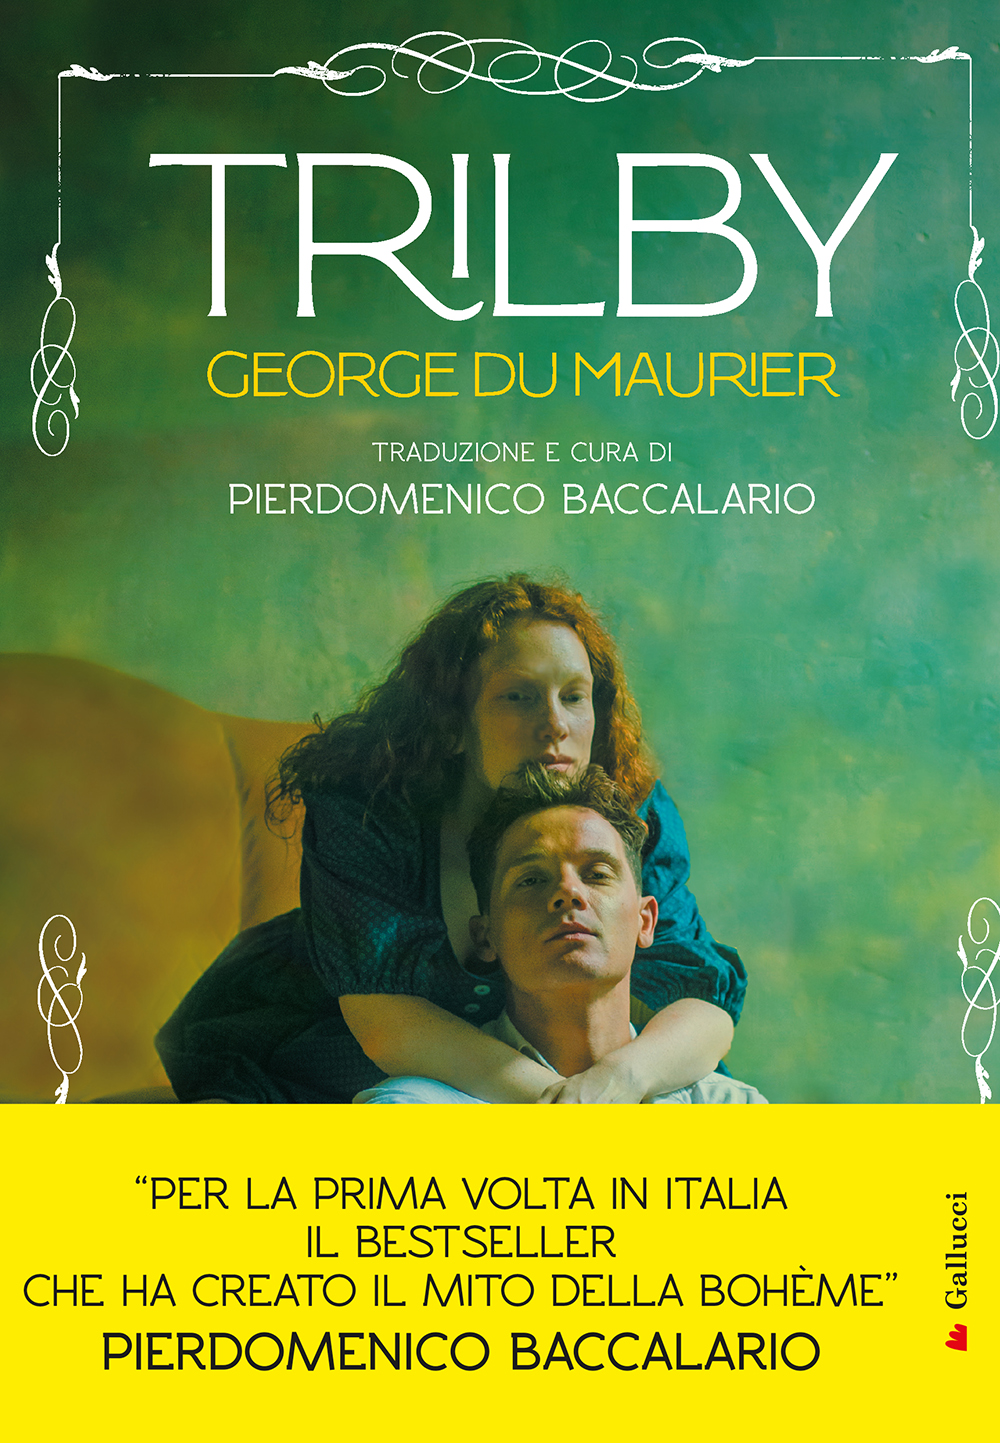 Trilby • Gallucci Editore